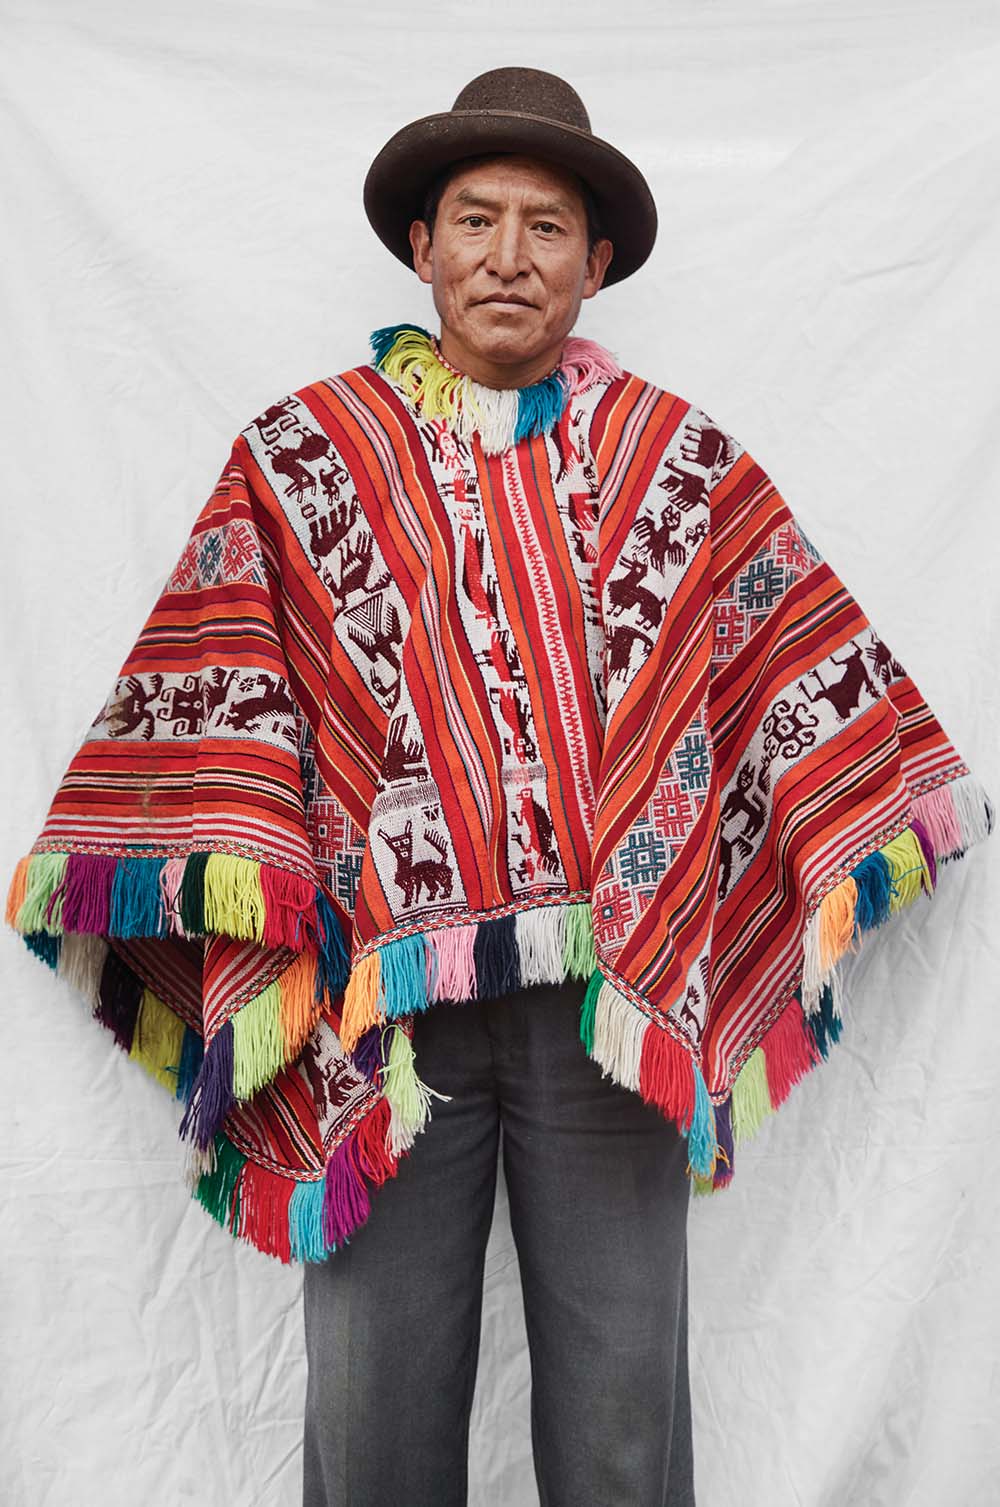 El fotolibro de este fotógrafo peruano encuentra una mirada contemporánea a la identidad andina